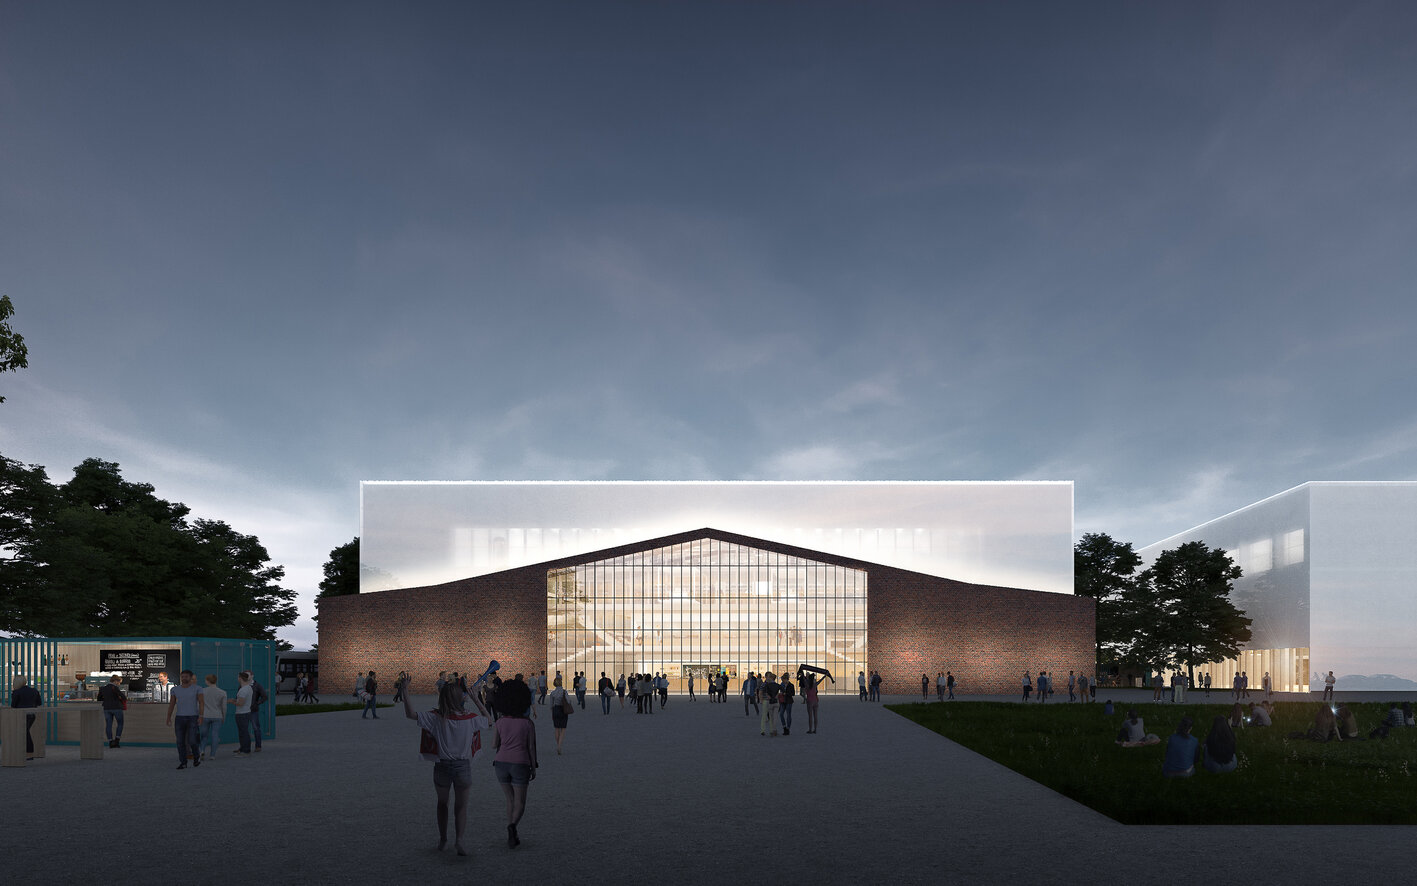 Aktualizovaná verze projektu Multifunkční sportovní haly Ostrava představena na včerejším zastupitelstvu